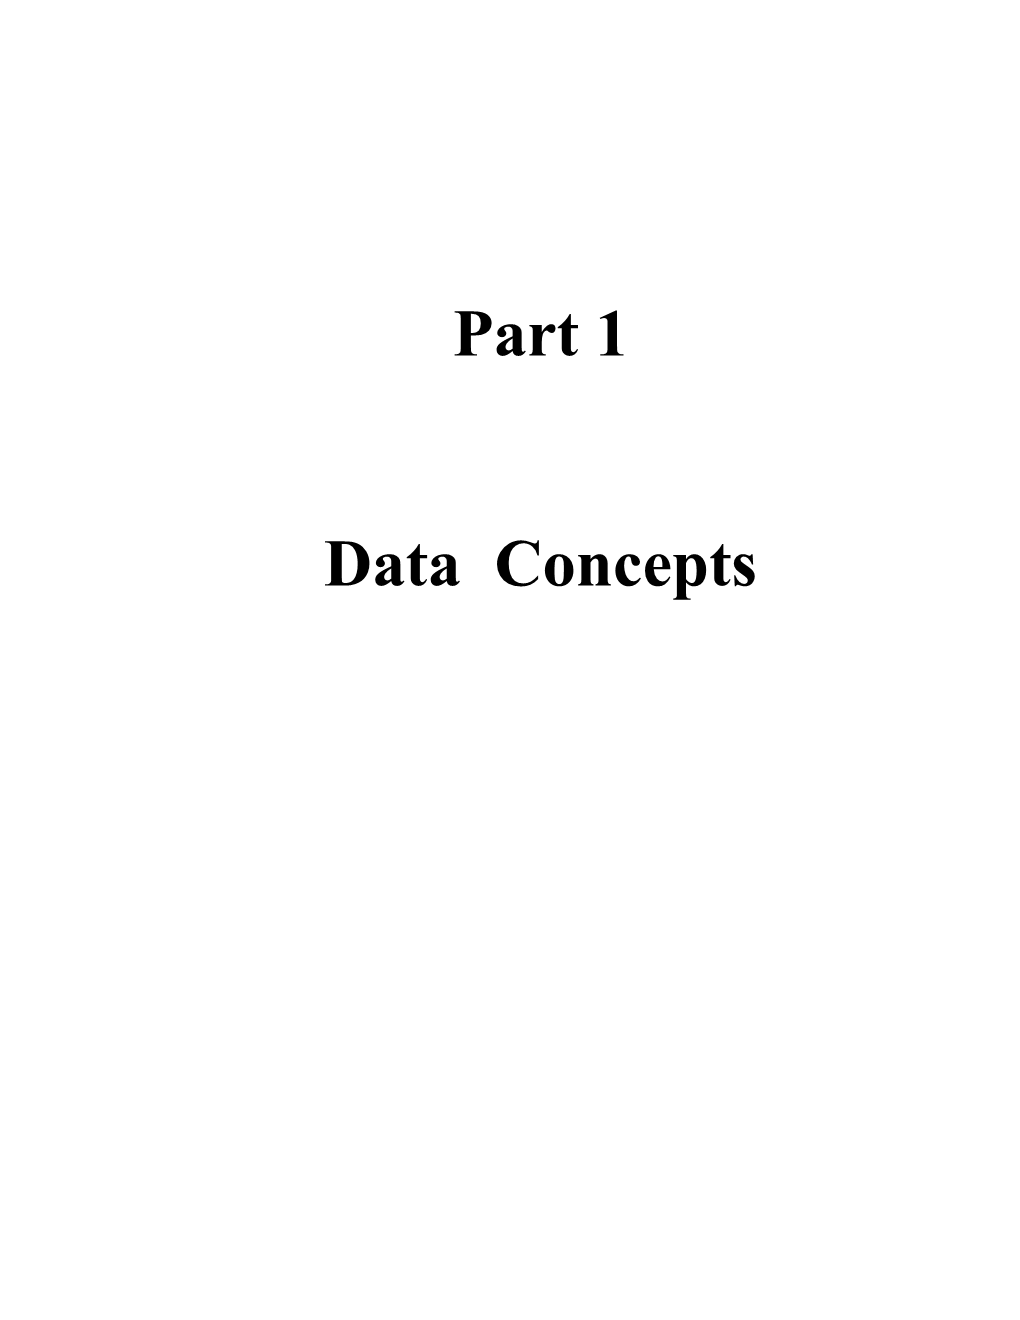 Part 1 - Data Concepts